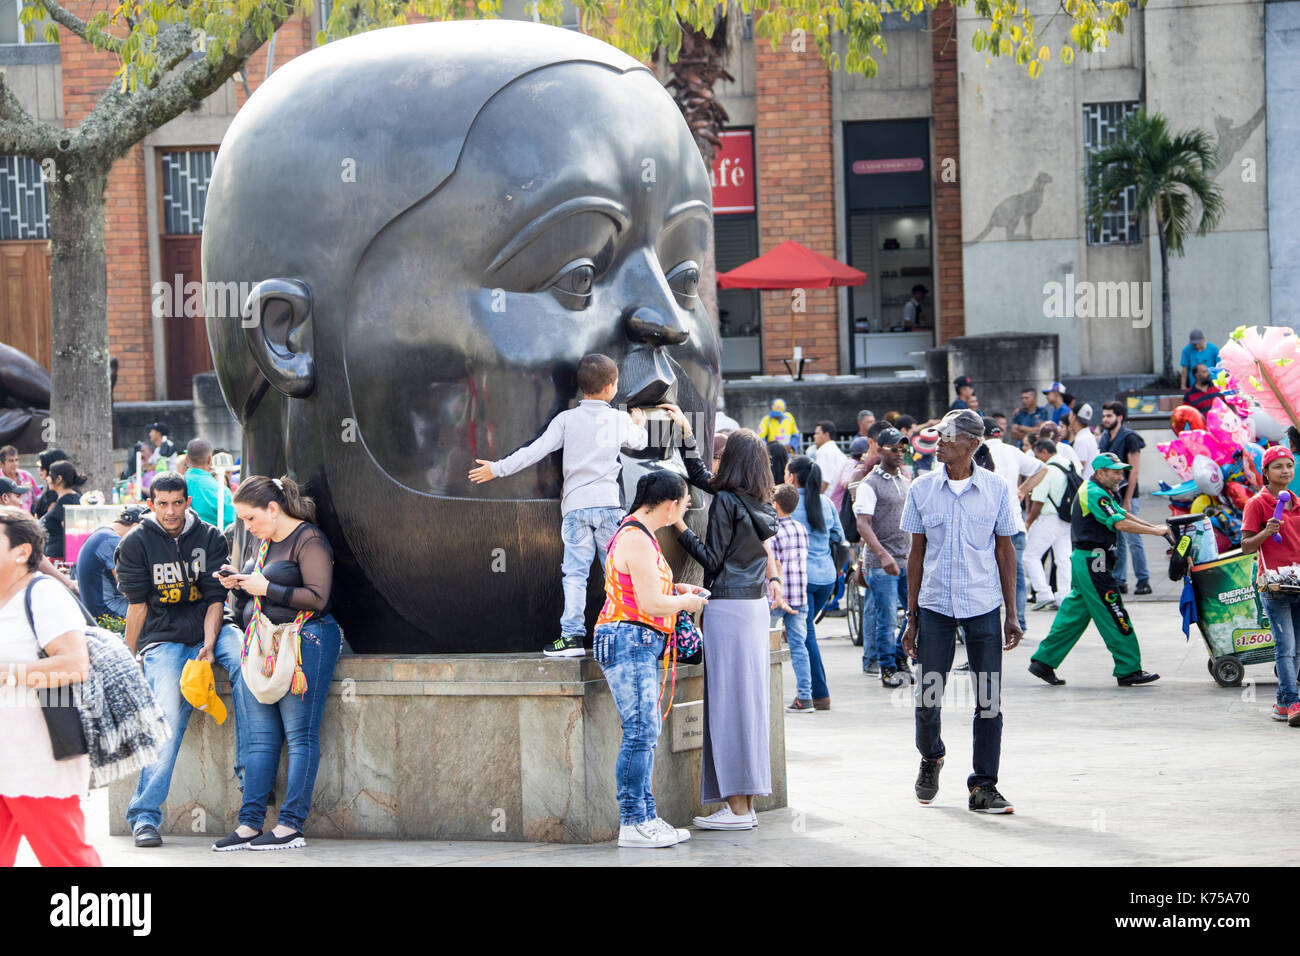 Cabeza ou tête sculpture, Botero Plaza, Medellin, Colombie Banque D'Images